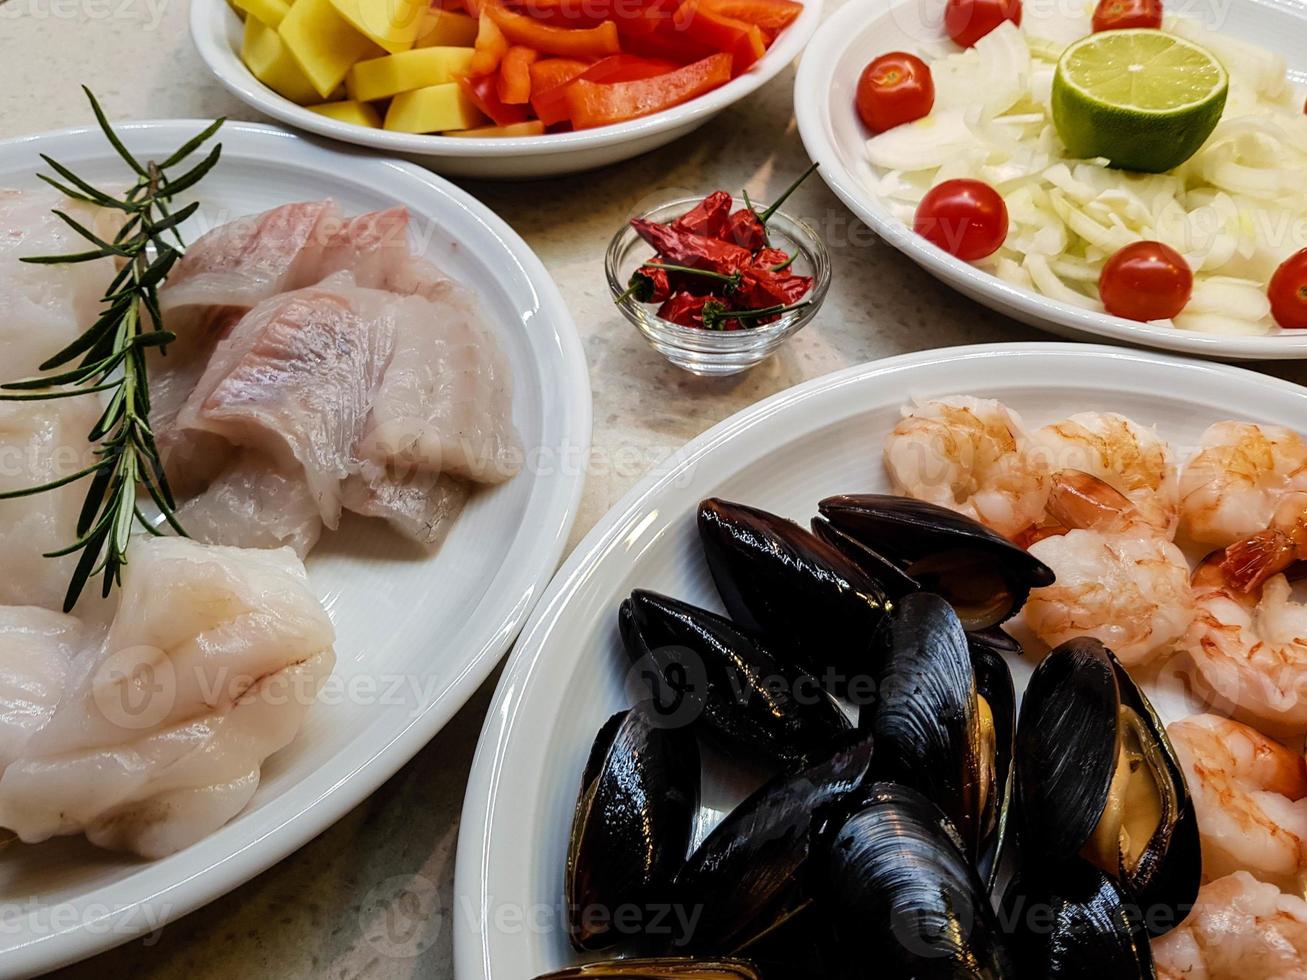 ingredientes para una cataplana de mariscos portuguesa foto